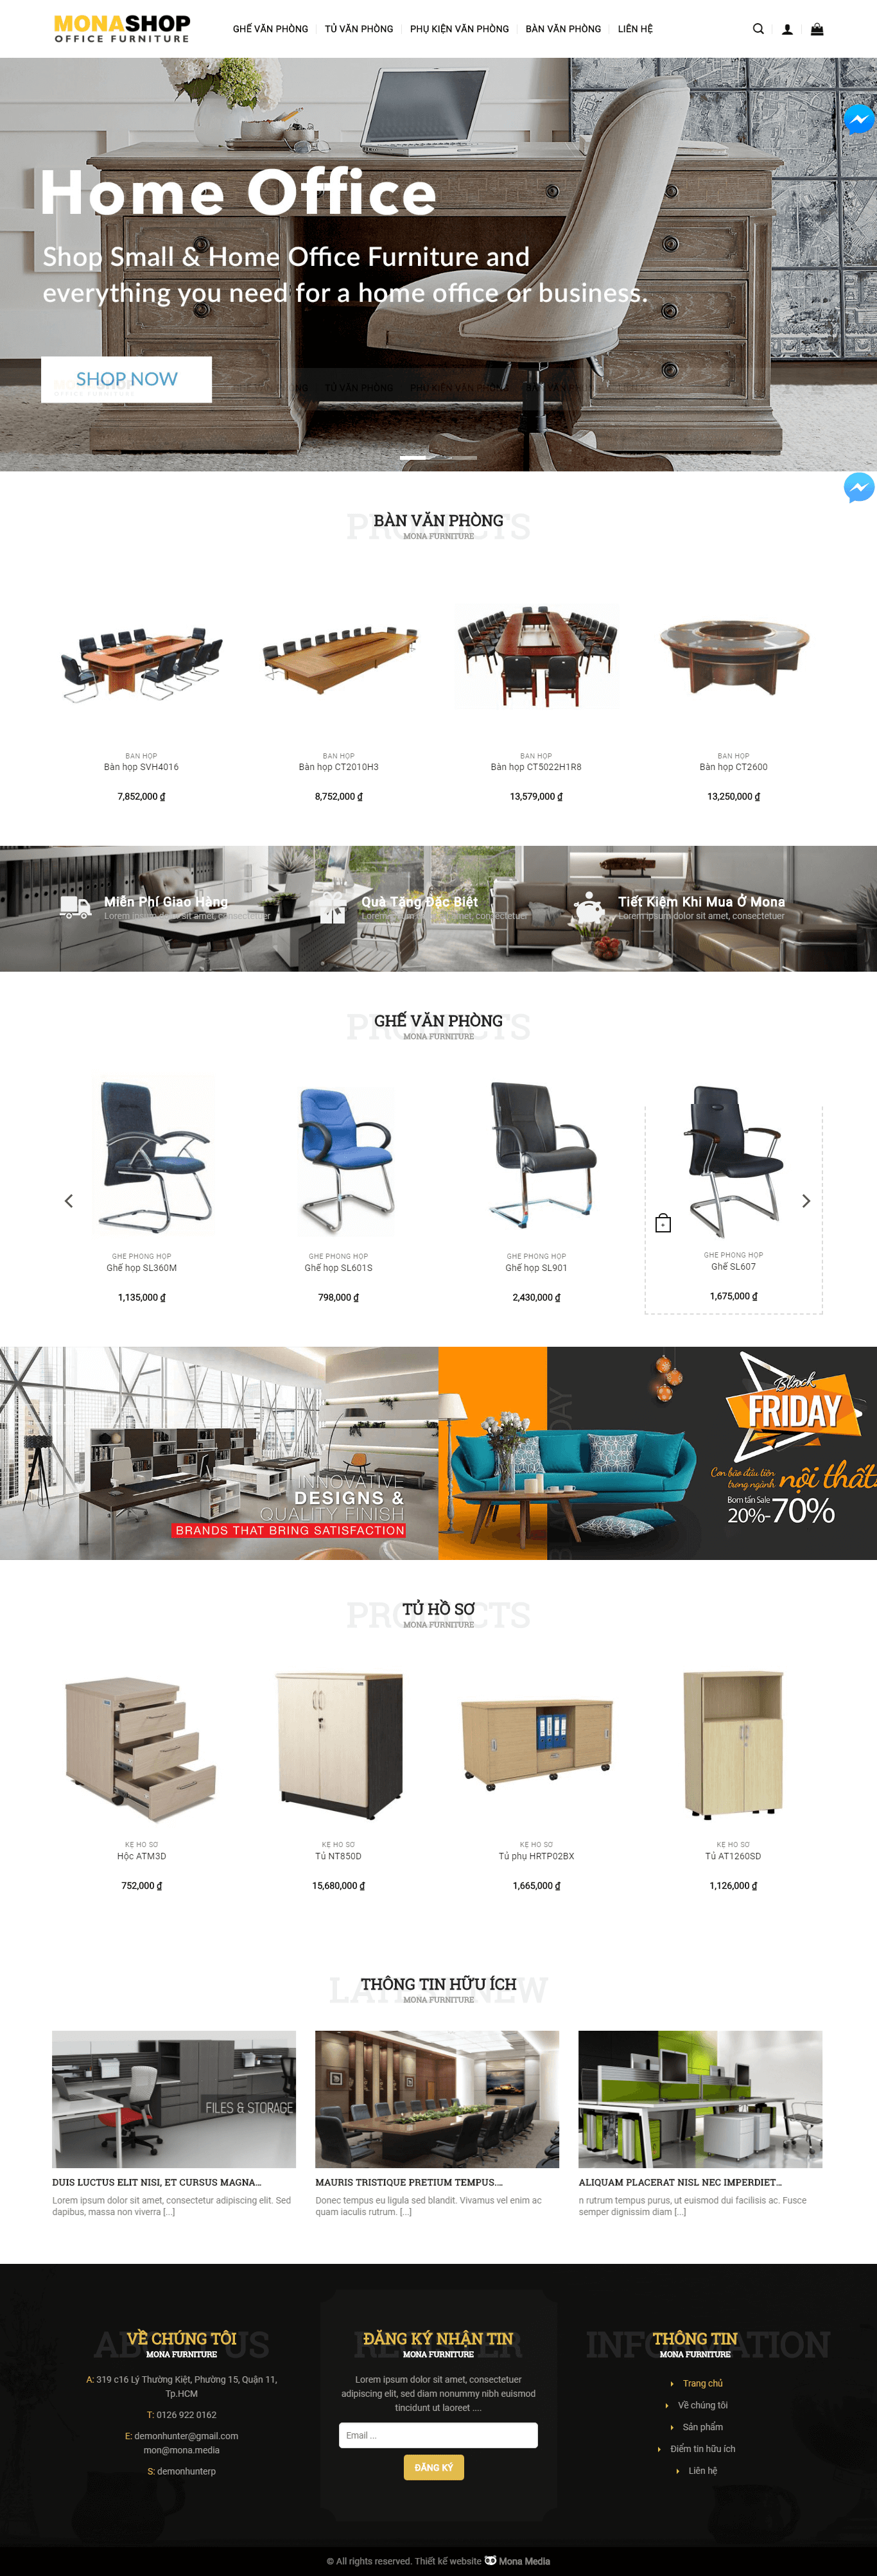 Mẫu website kinh doanh nội thất văn phòng – công ty